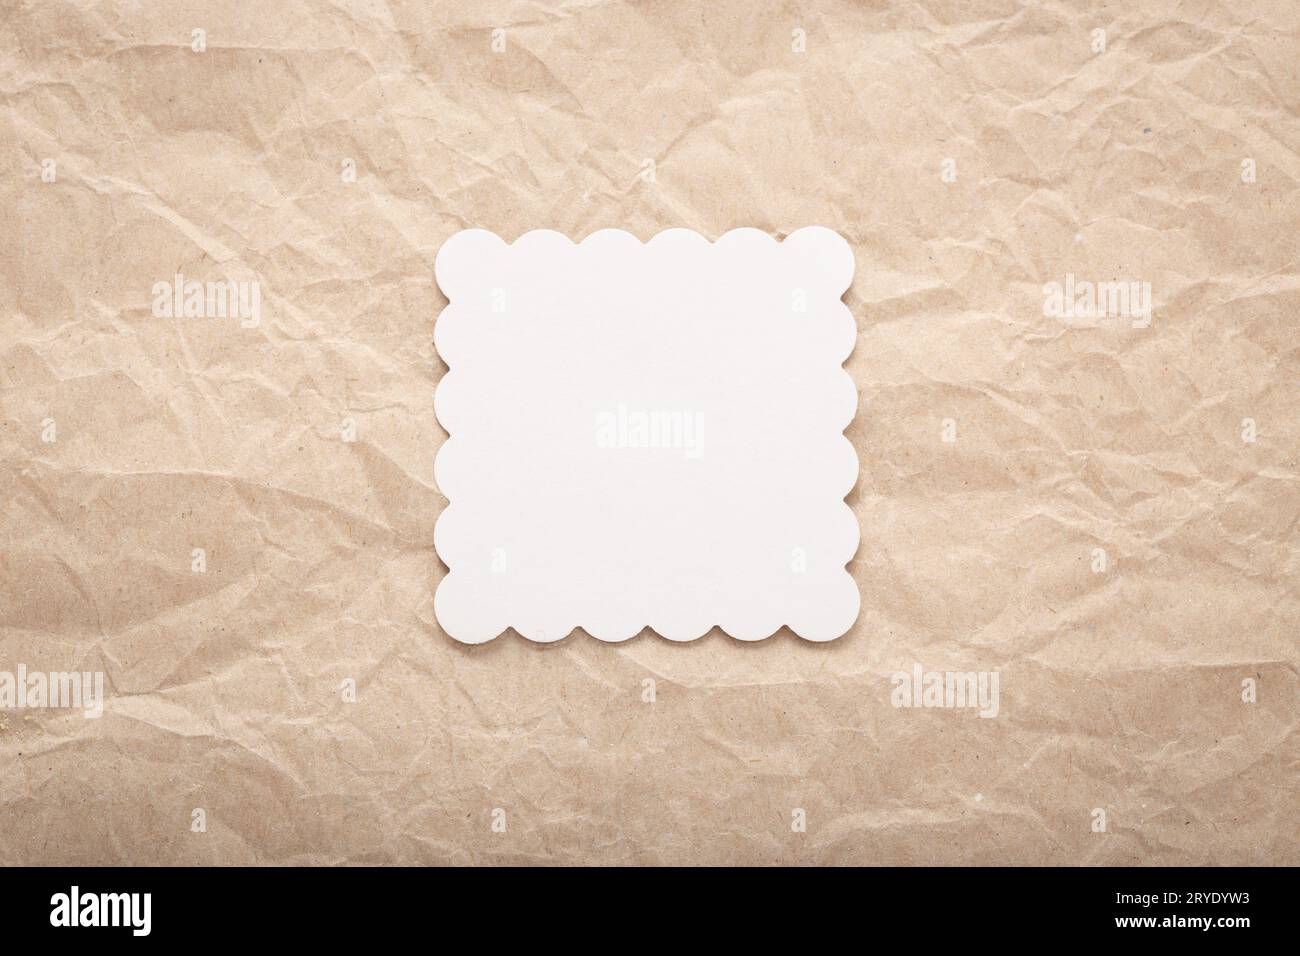 Modellvorlage einer weißen Pappkarte auf zerknittertem Papier Stockfoto